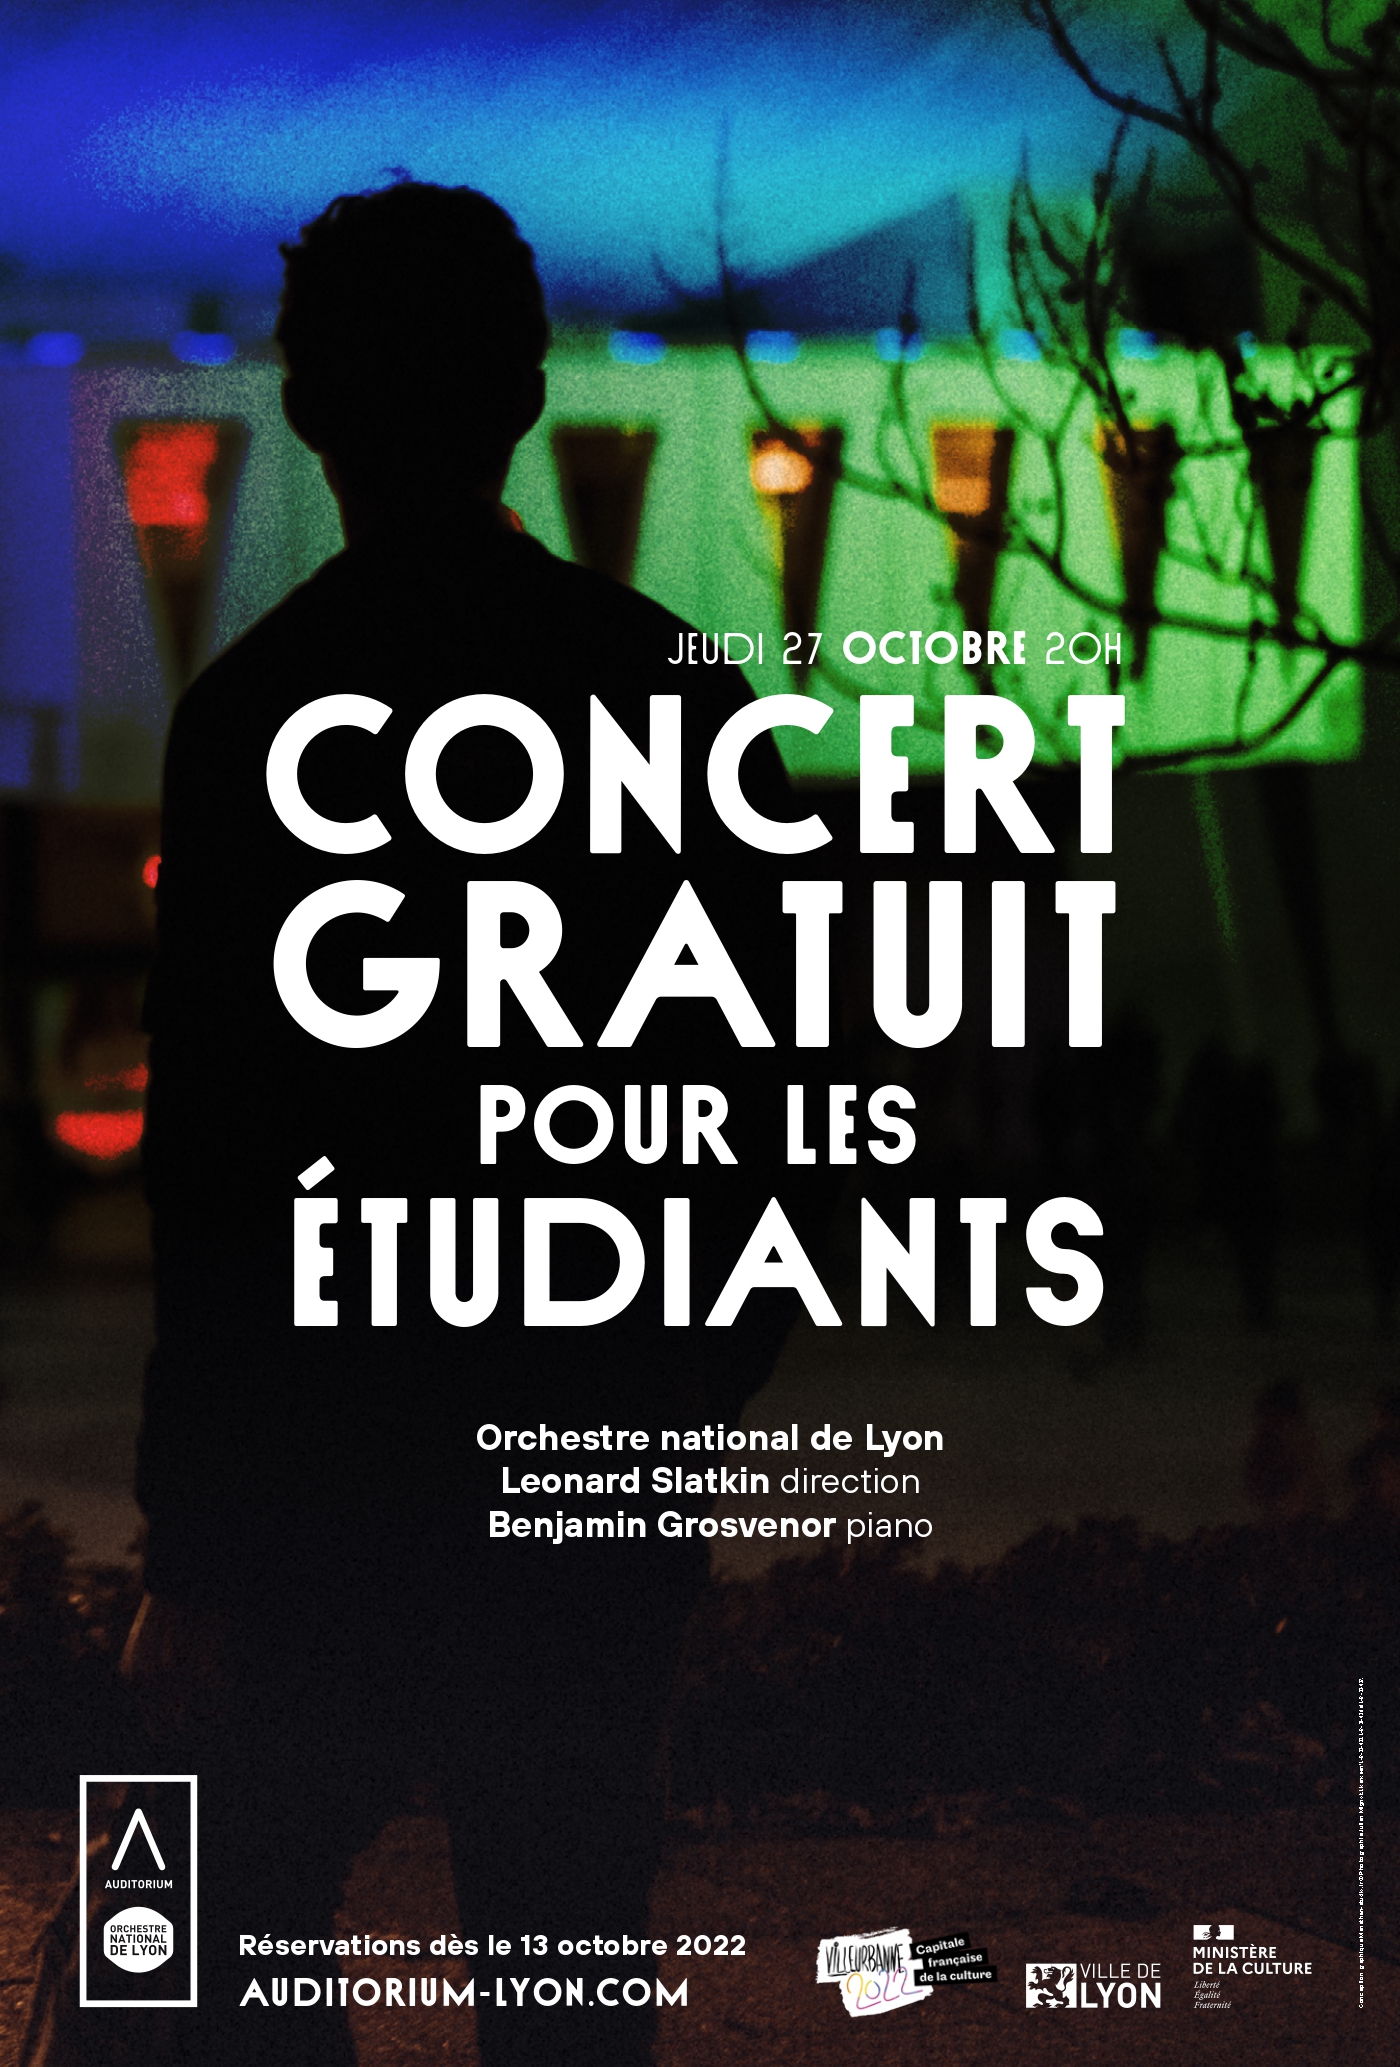 Concert gratuit pour les étudiants